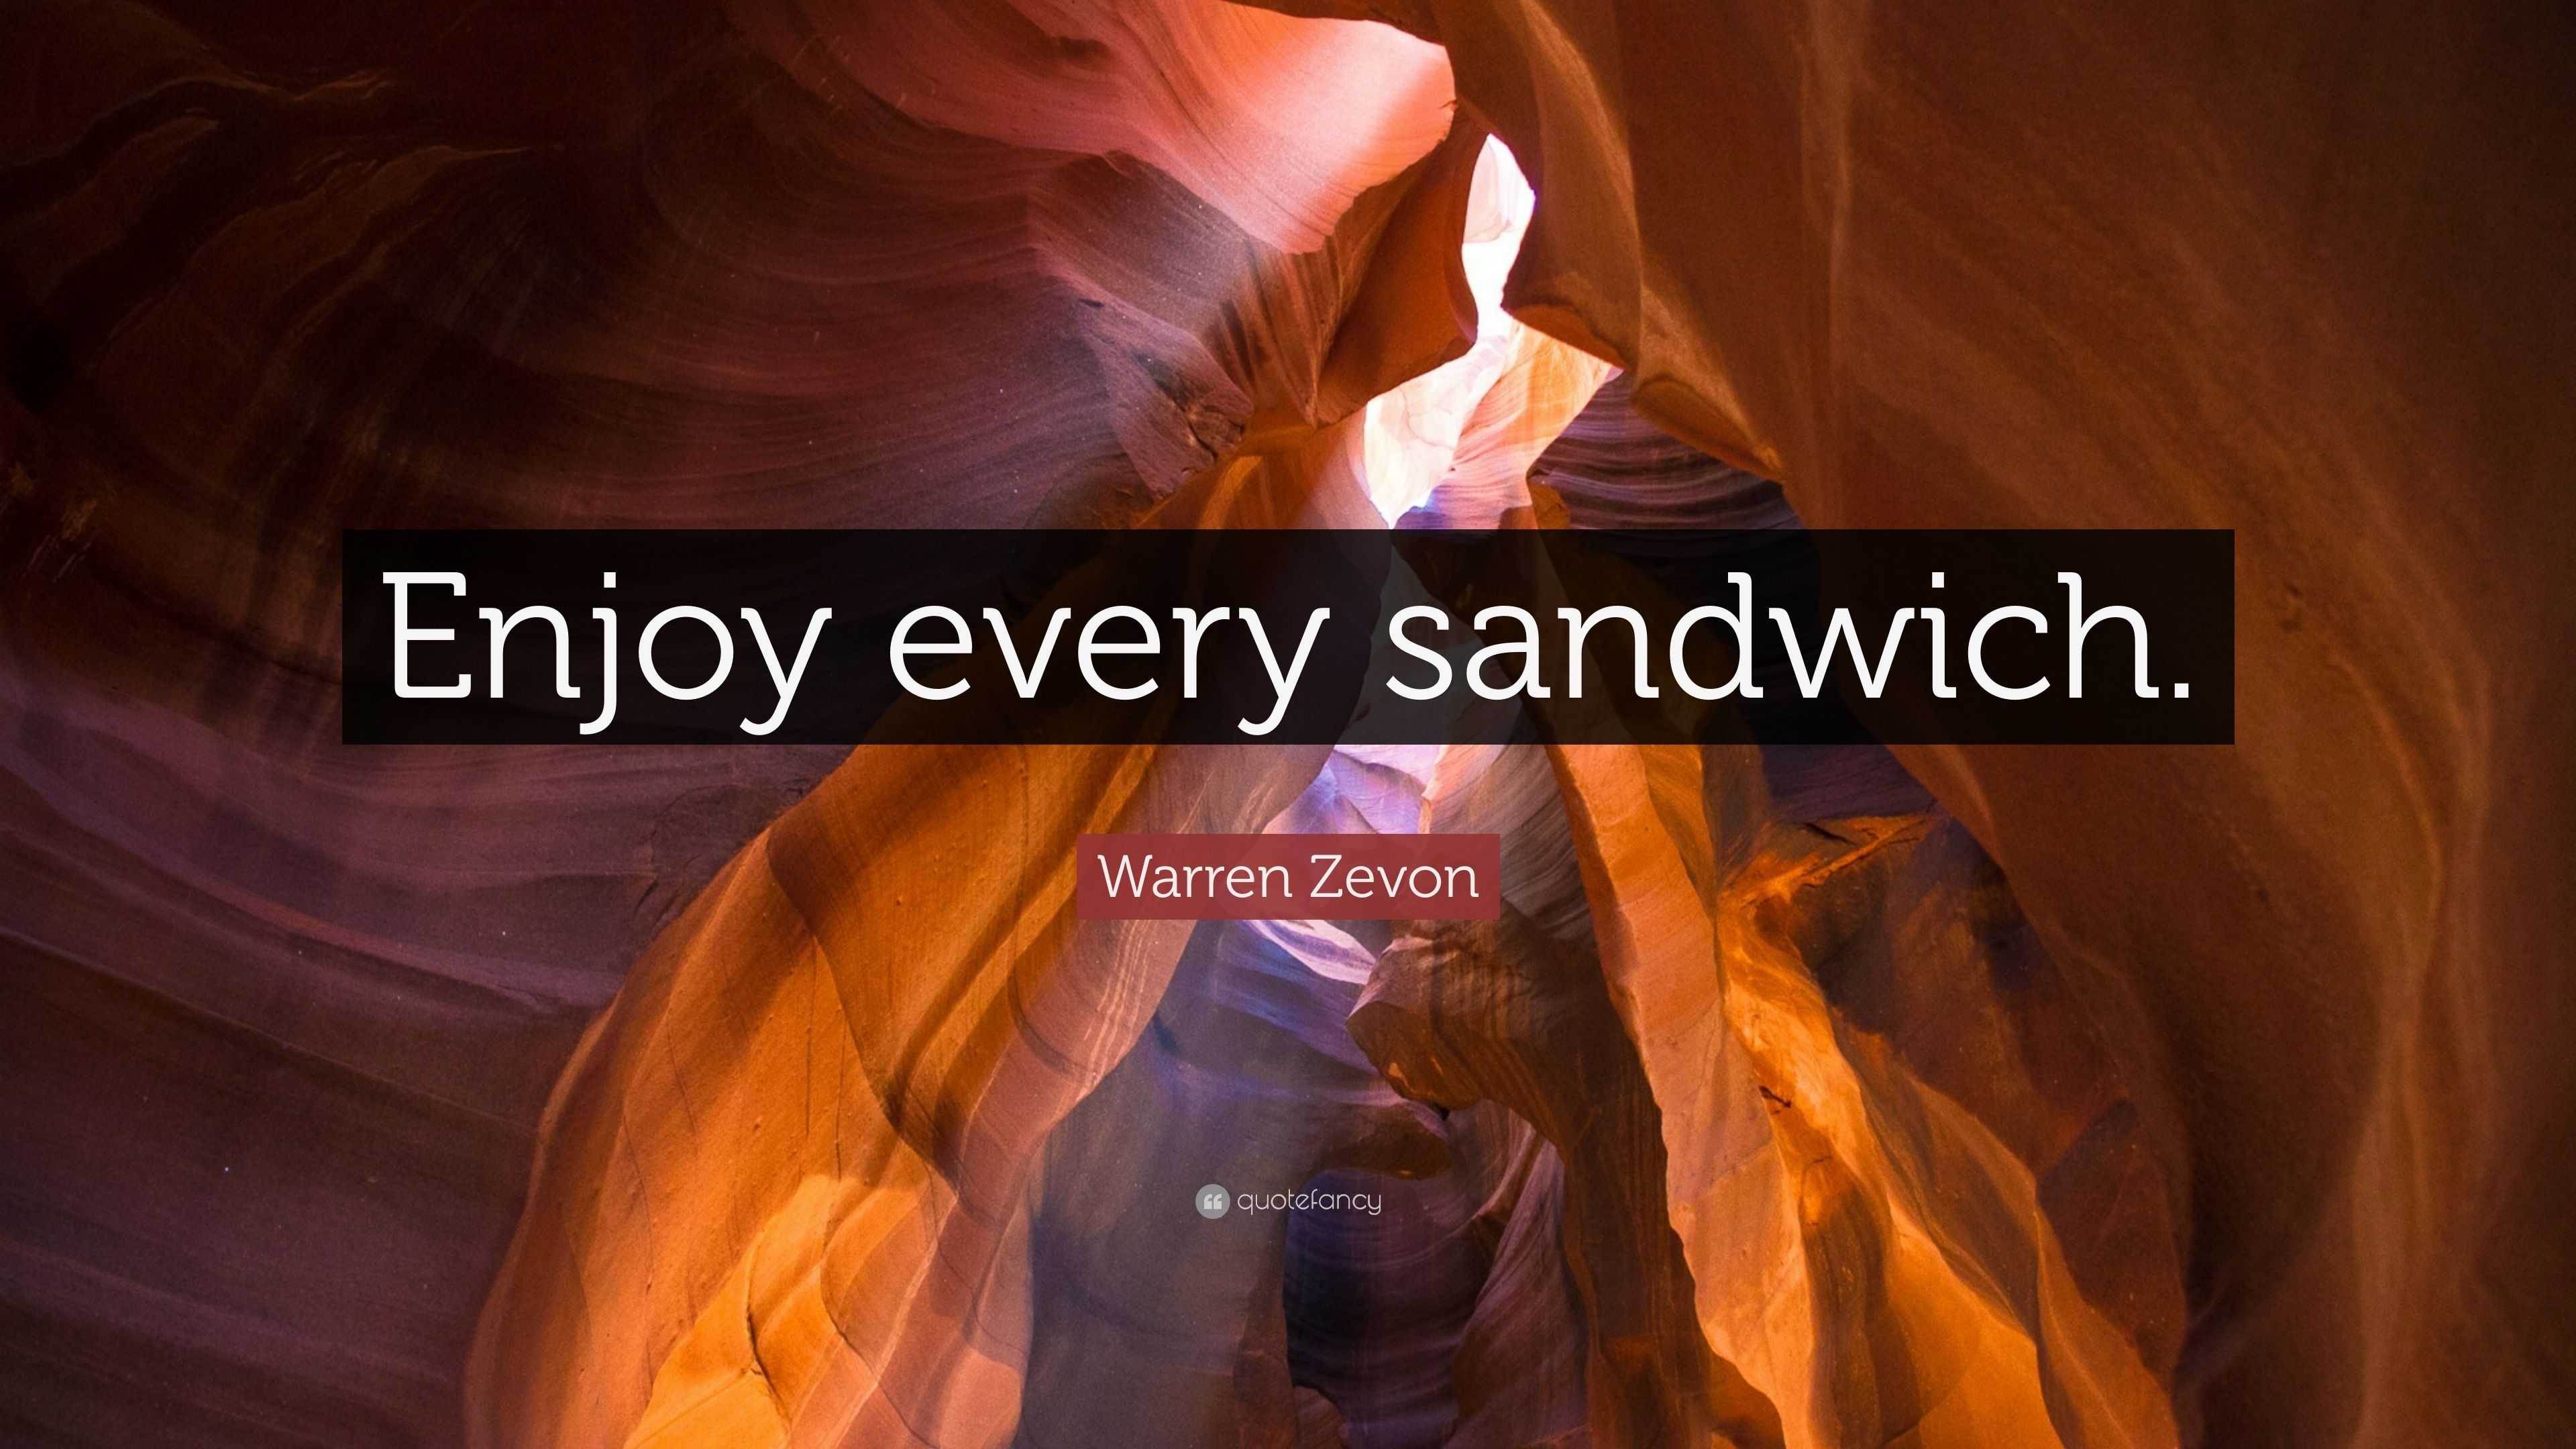 warren zevon enjoy every sandwich letterman